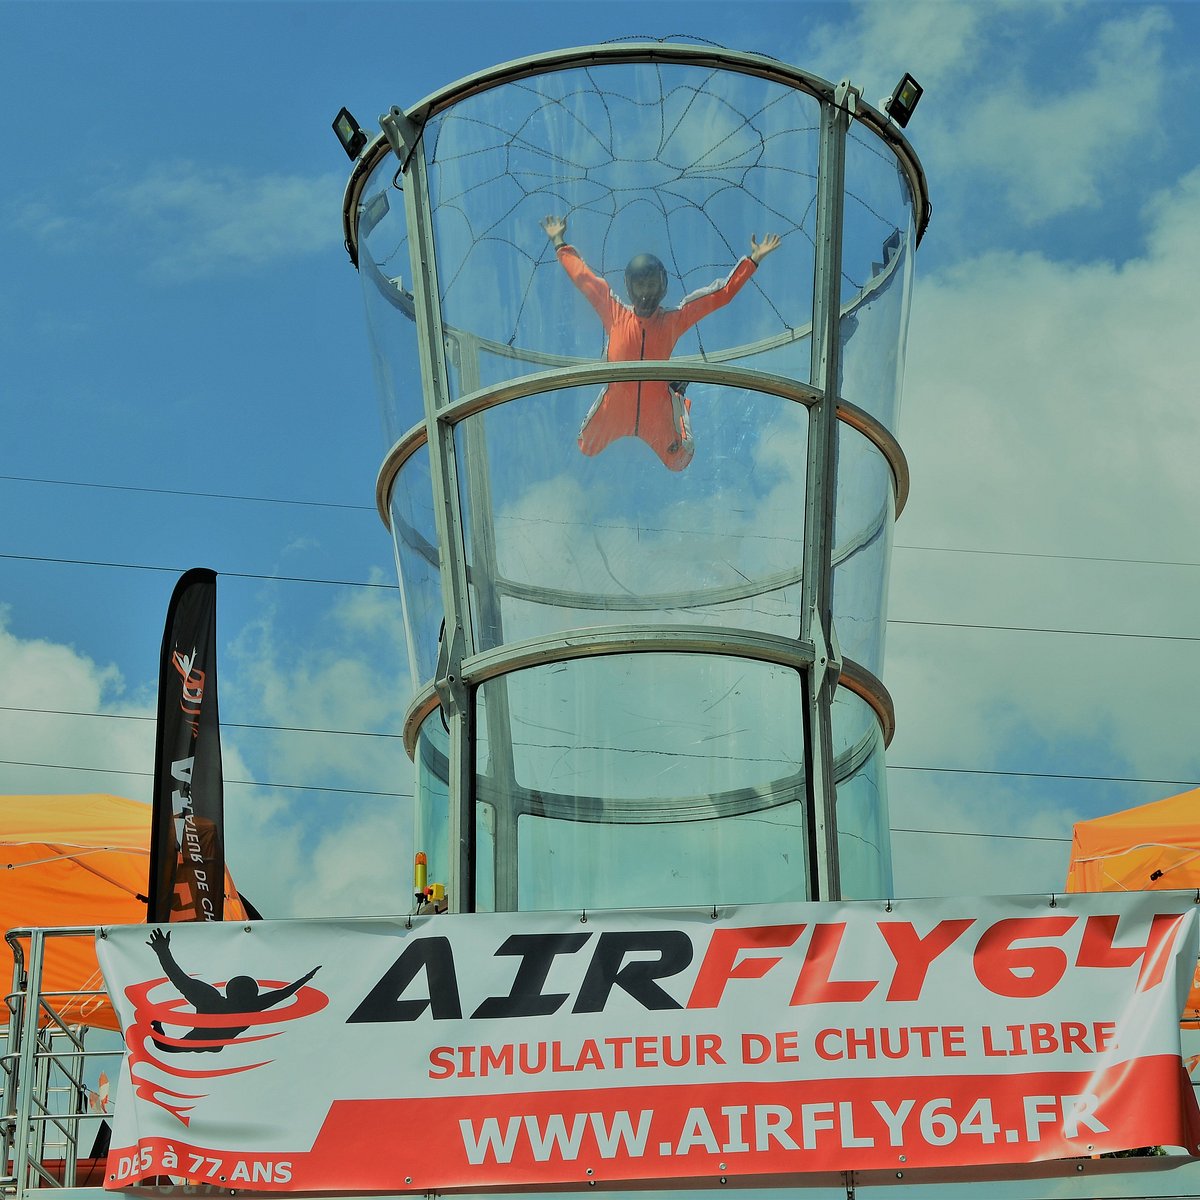 Simulateur de chute libre AirFly, unique en Europe - AIR FLY